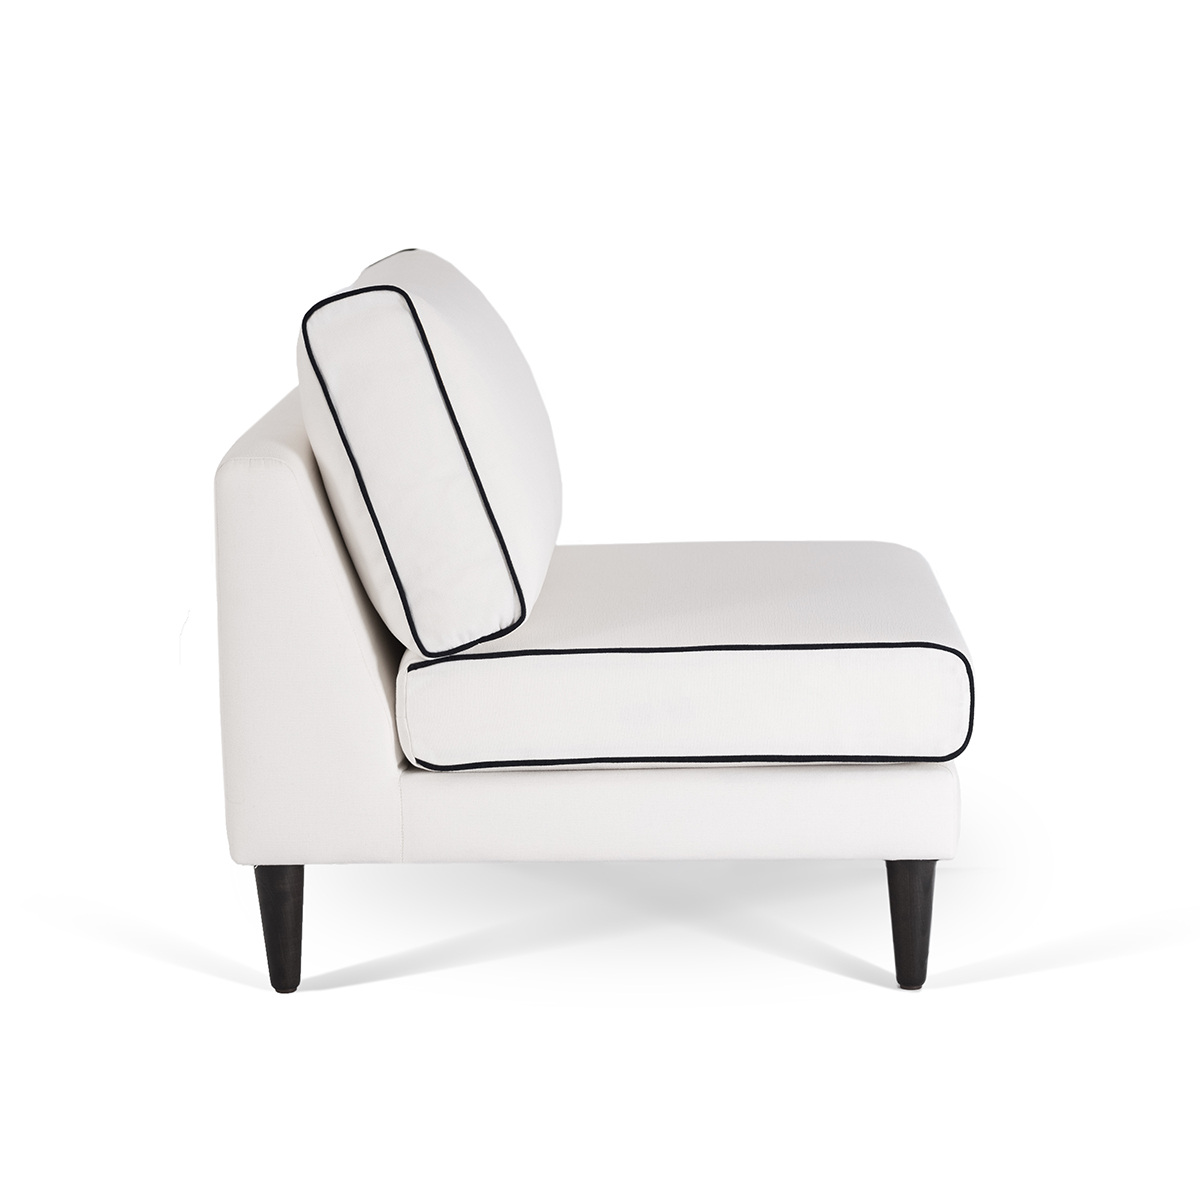 Flip Chair Noa, White / Black - H80 x W80 x D75 cm - Cotton / Wood - image 3